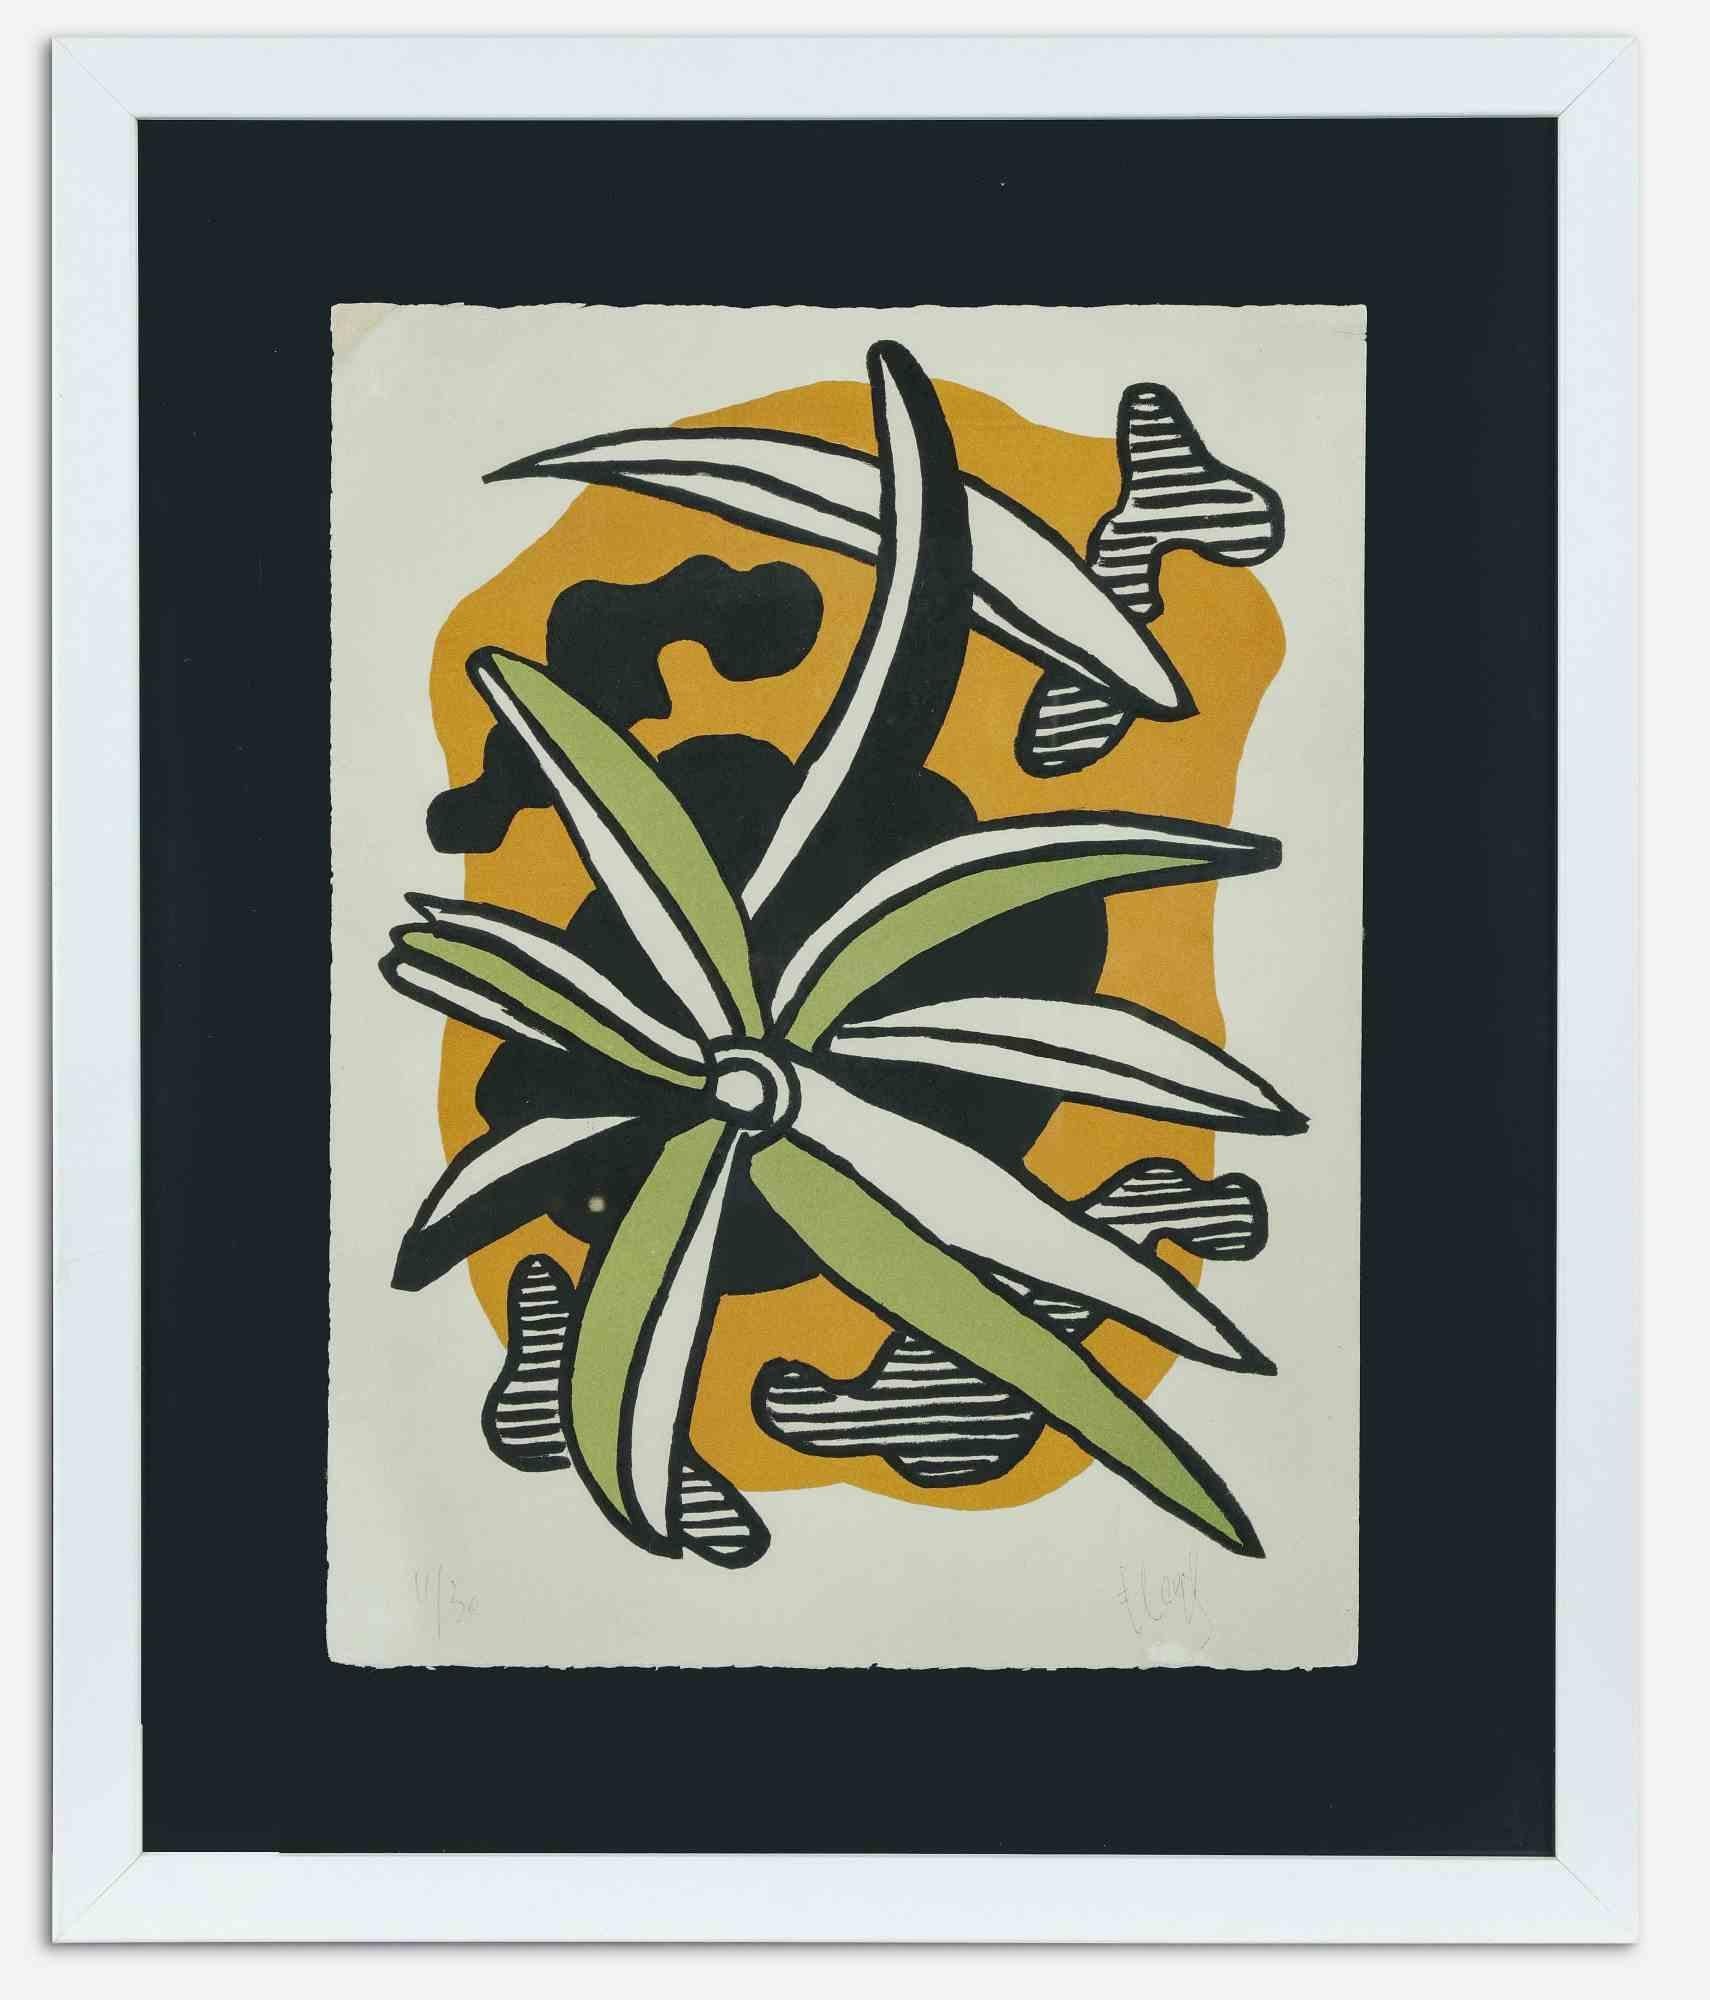 Fleur ist ein originales zeitgenössisches Kunstwerk, das von Fernand Leger realisiert wurde.

Gemischtfarbige Lithographie.

Am unteren Rand handsigniert und nummeriert.

Ausgabe vom 30.11.

Referenz: Katalog Bluemoon Gallery, S. 194,